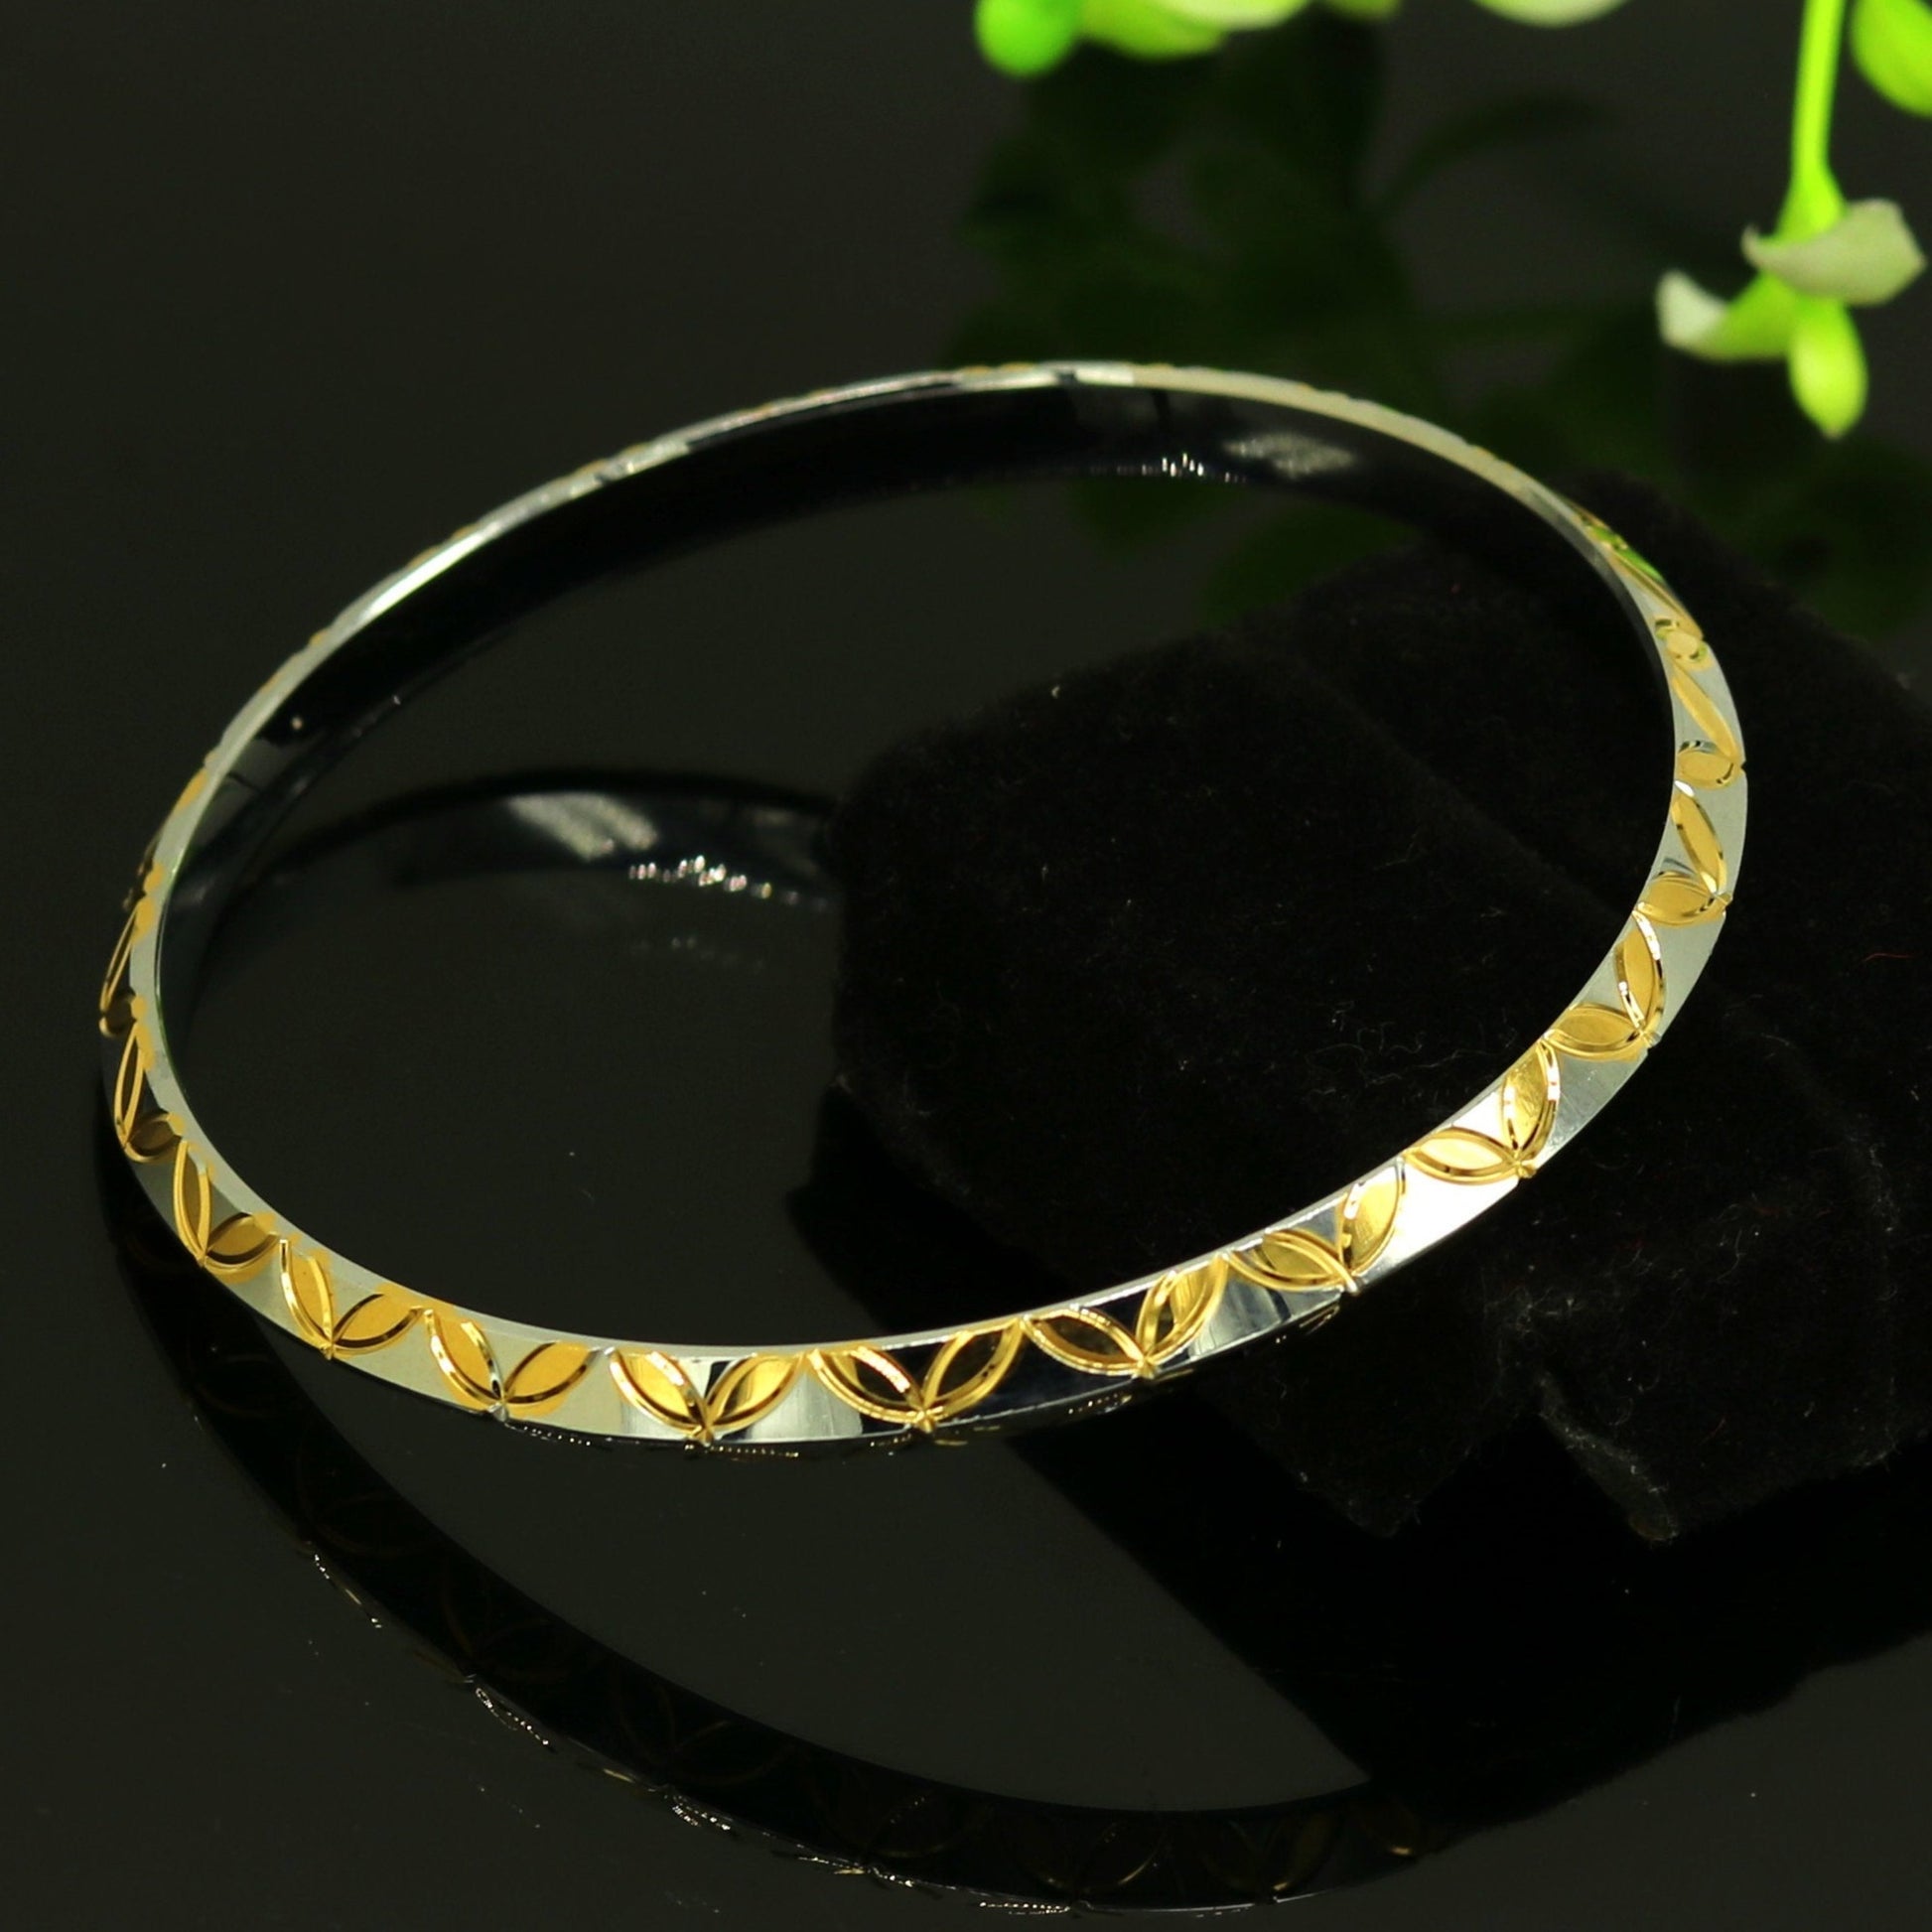 Punjabi Sikh solid silver gold polished bangle bracelet kada, amazing customized design personalized gift jewelry tribal india nssk247 - TRIBAL ORNAMENTS